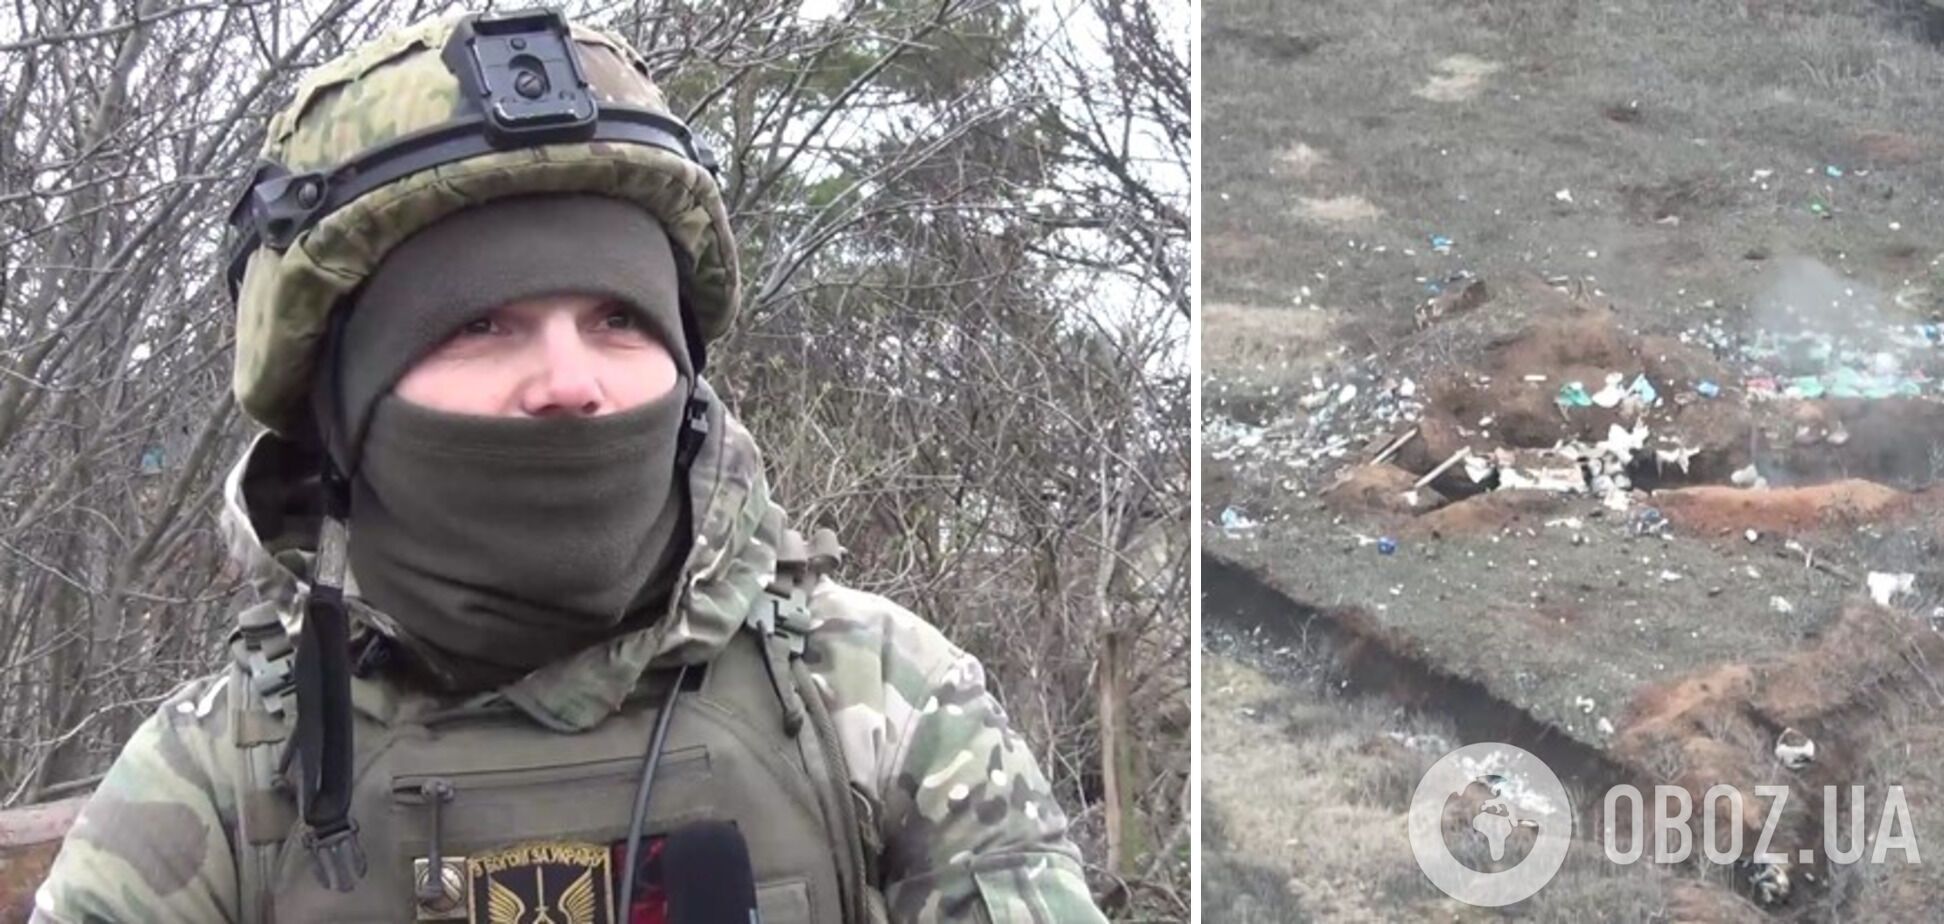 Украинские егеря-десантники уничтожили подразделение оккупантов и заняли их боевые позиции. Видео 18+